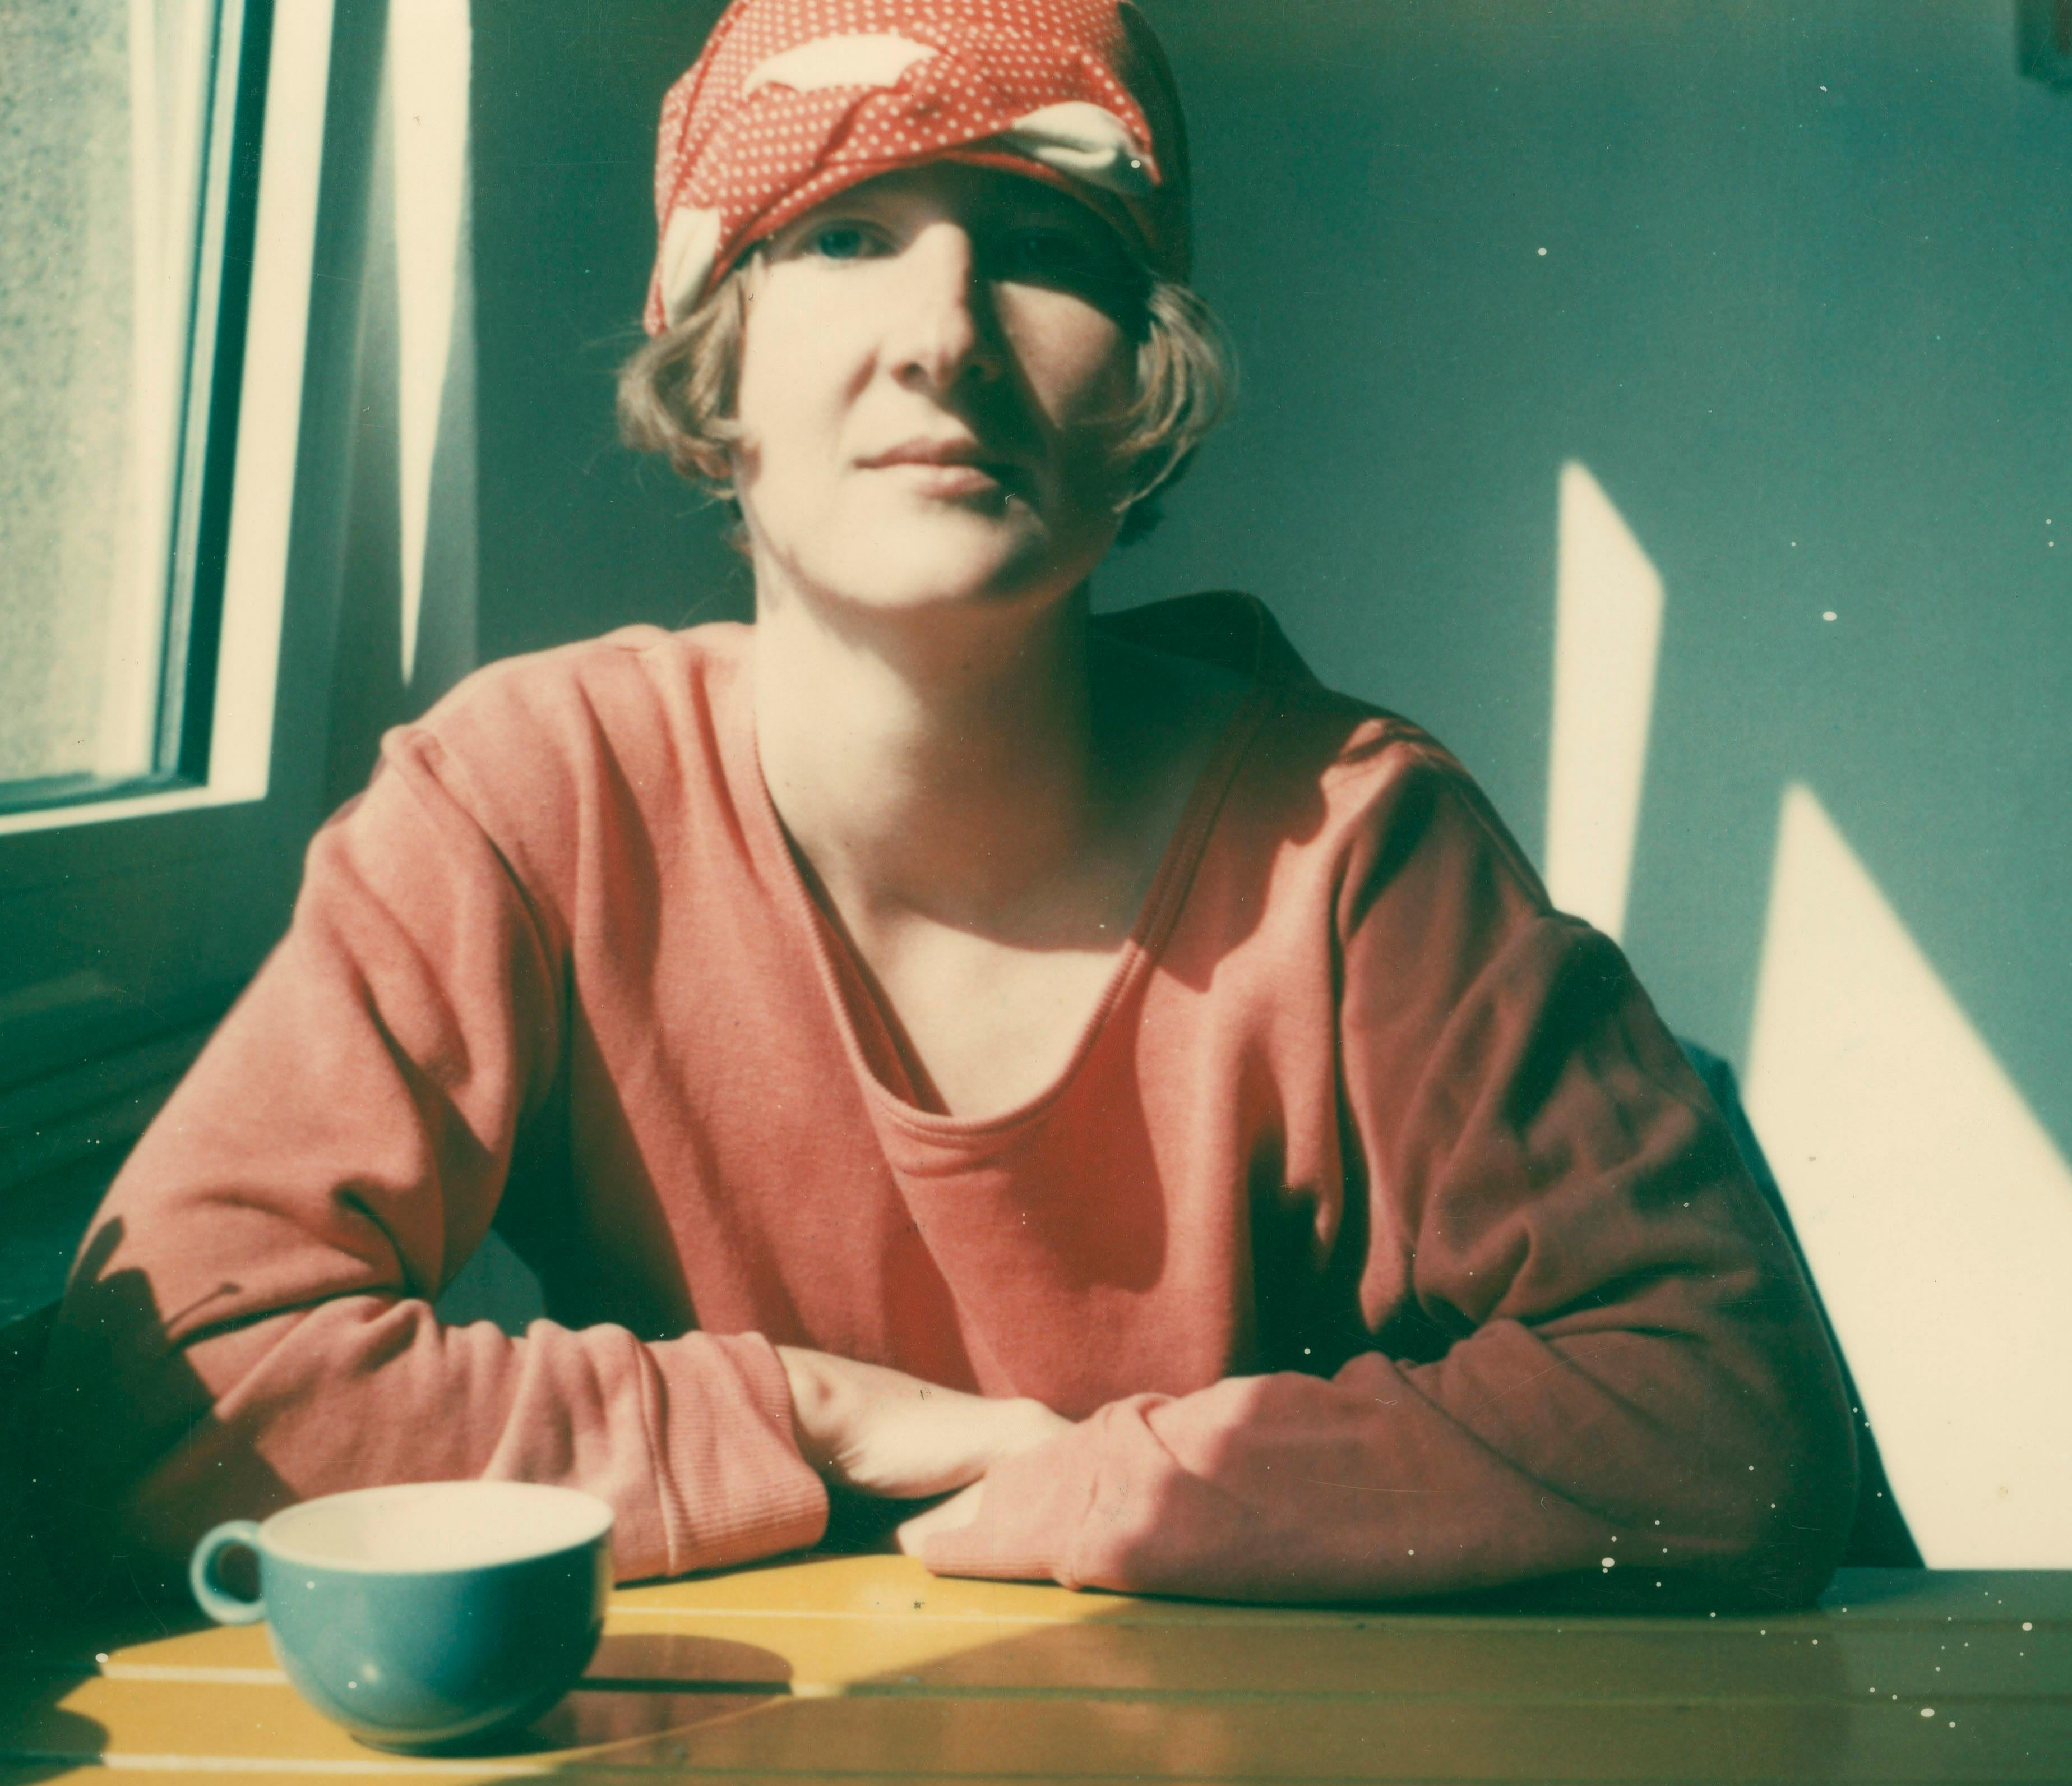 Jeanne, 1993 - Photograph by Stefanie Schneider